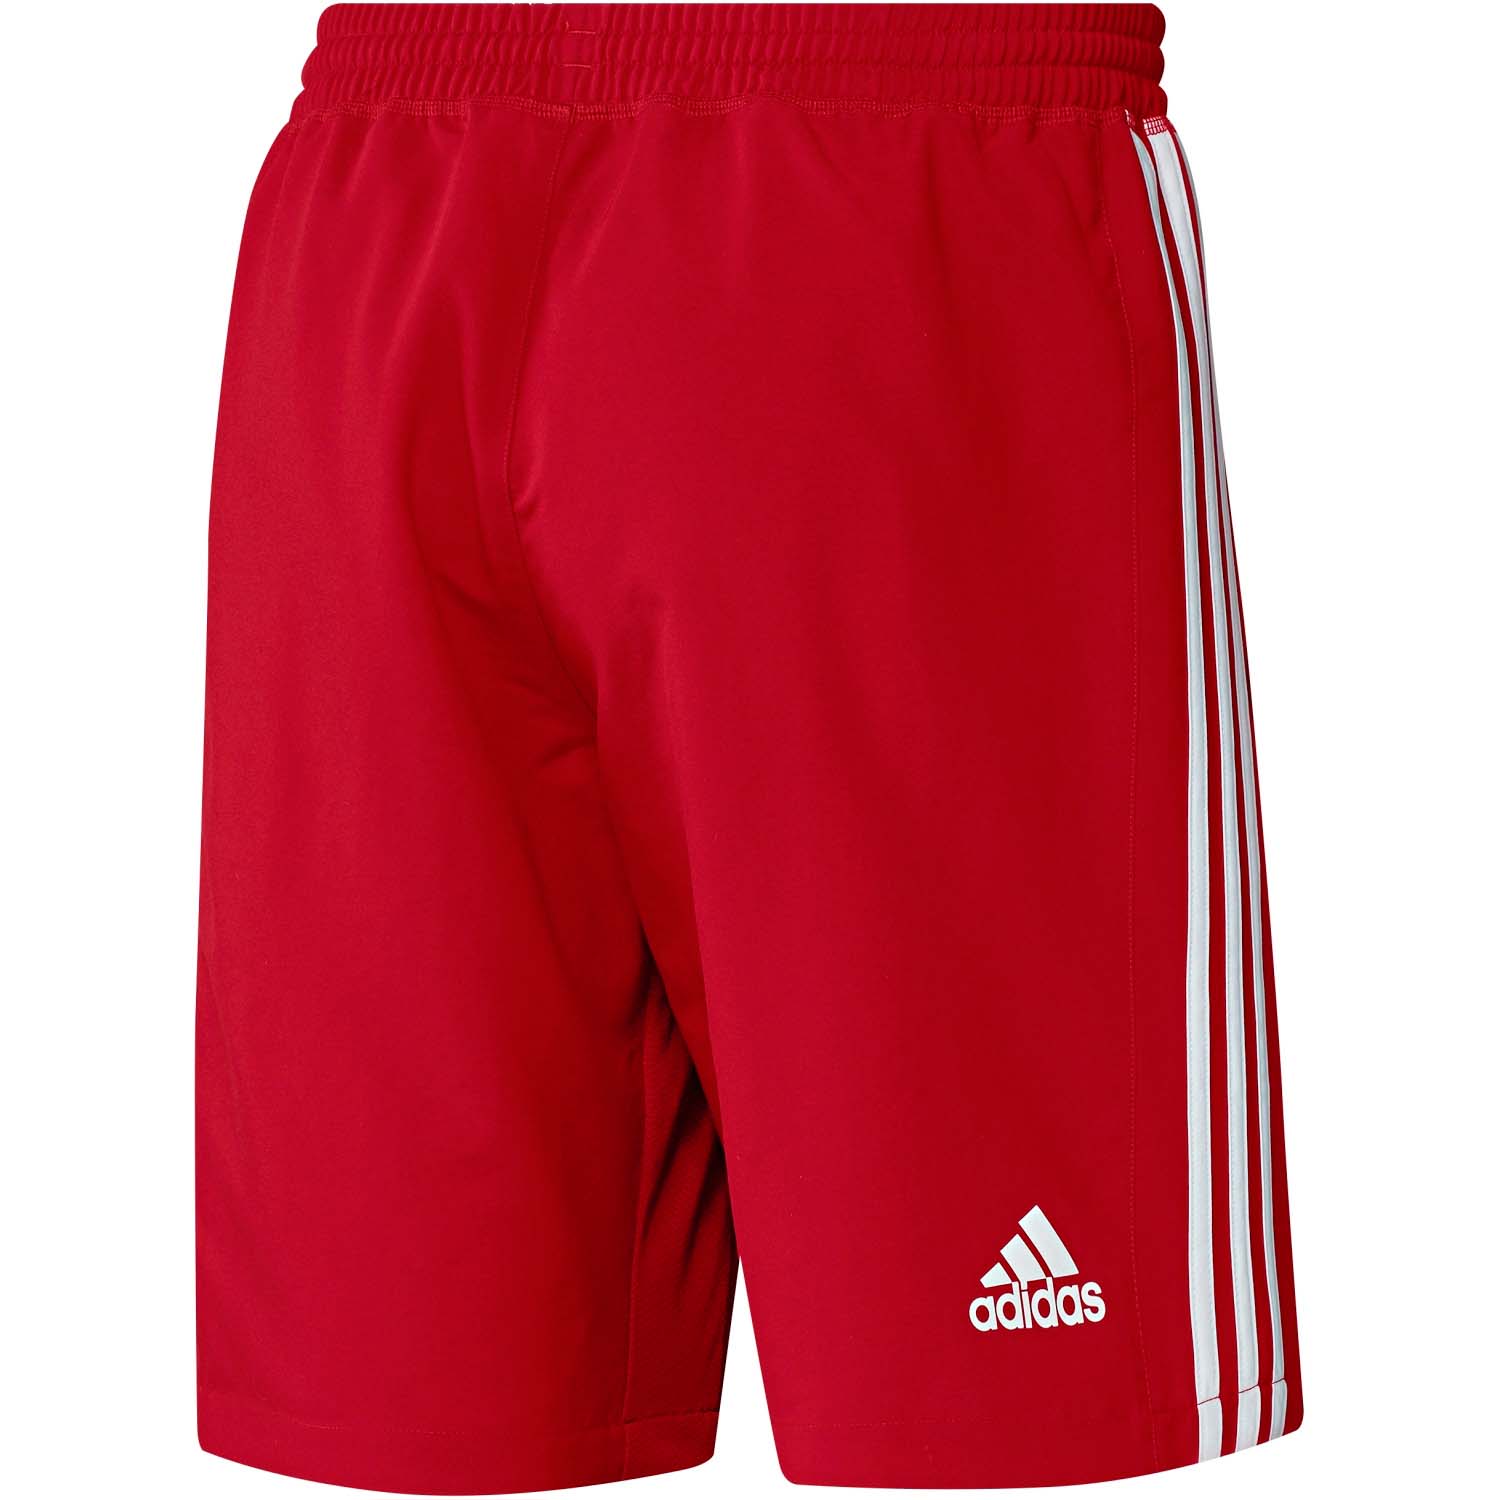 T16 Cc pantalon corto adidas rojo blanco chico AJ5295 | Bikes